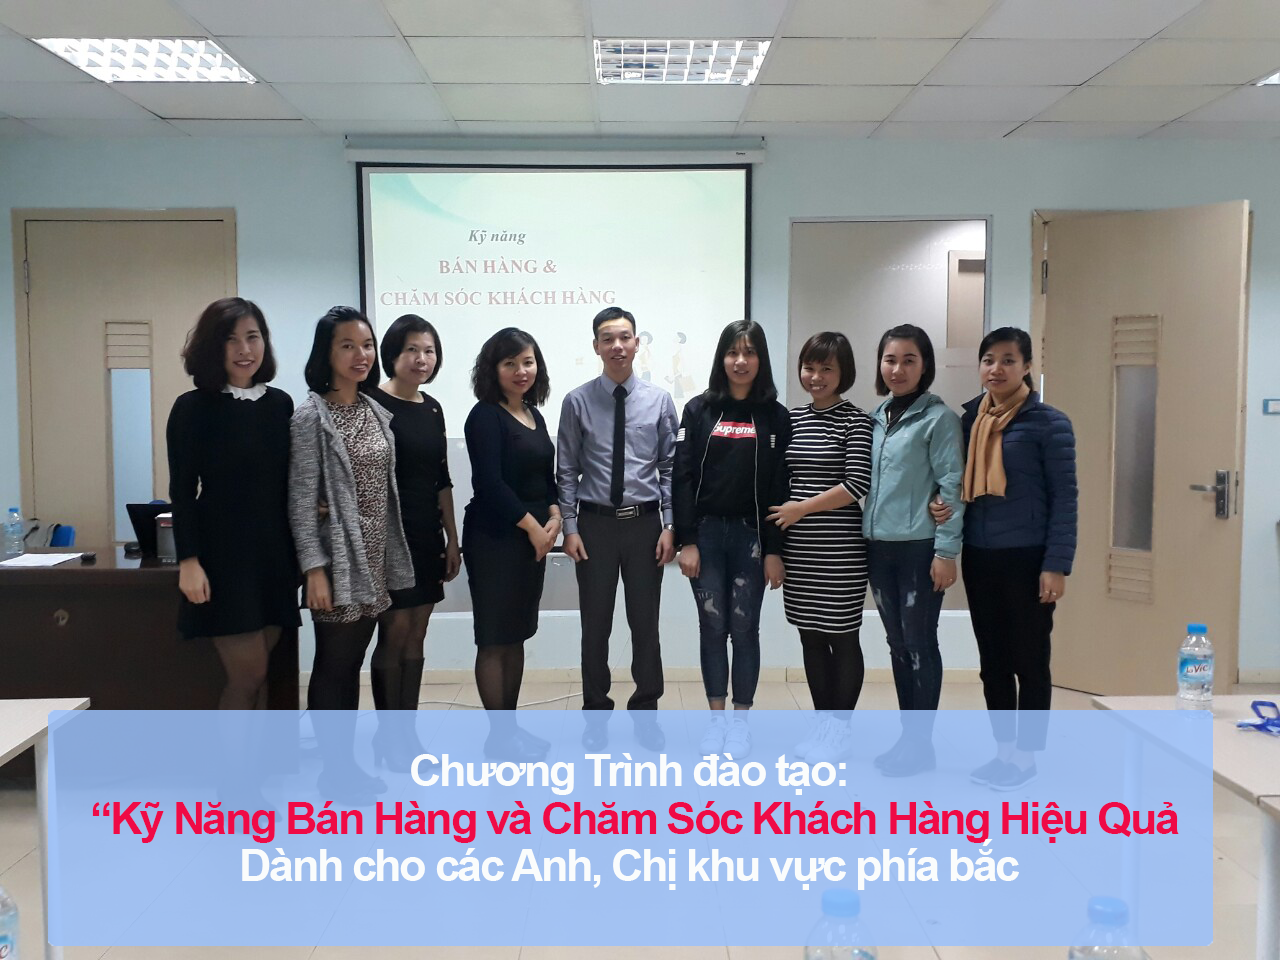 Đào tạo public: “Kỹ Năng Bán Hàng Và Chăm Sóc Khách Hàng Hiệu Quả” tại Hà Nội